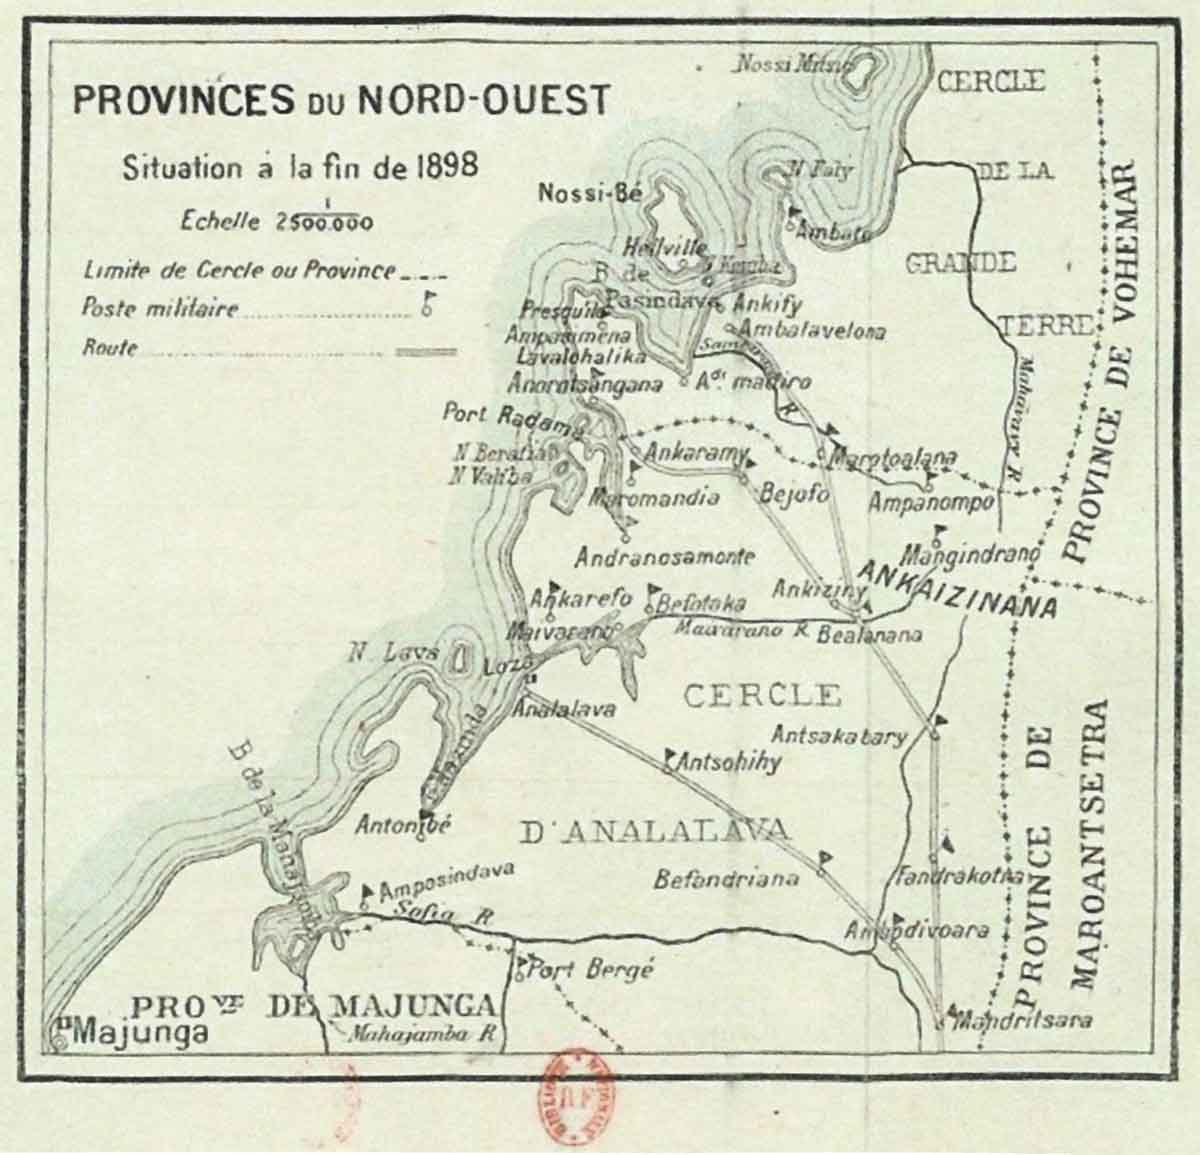 La situation de la province du nord-est à la fin de la 1898